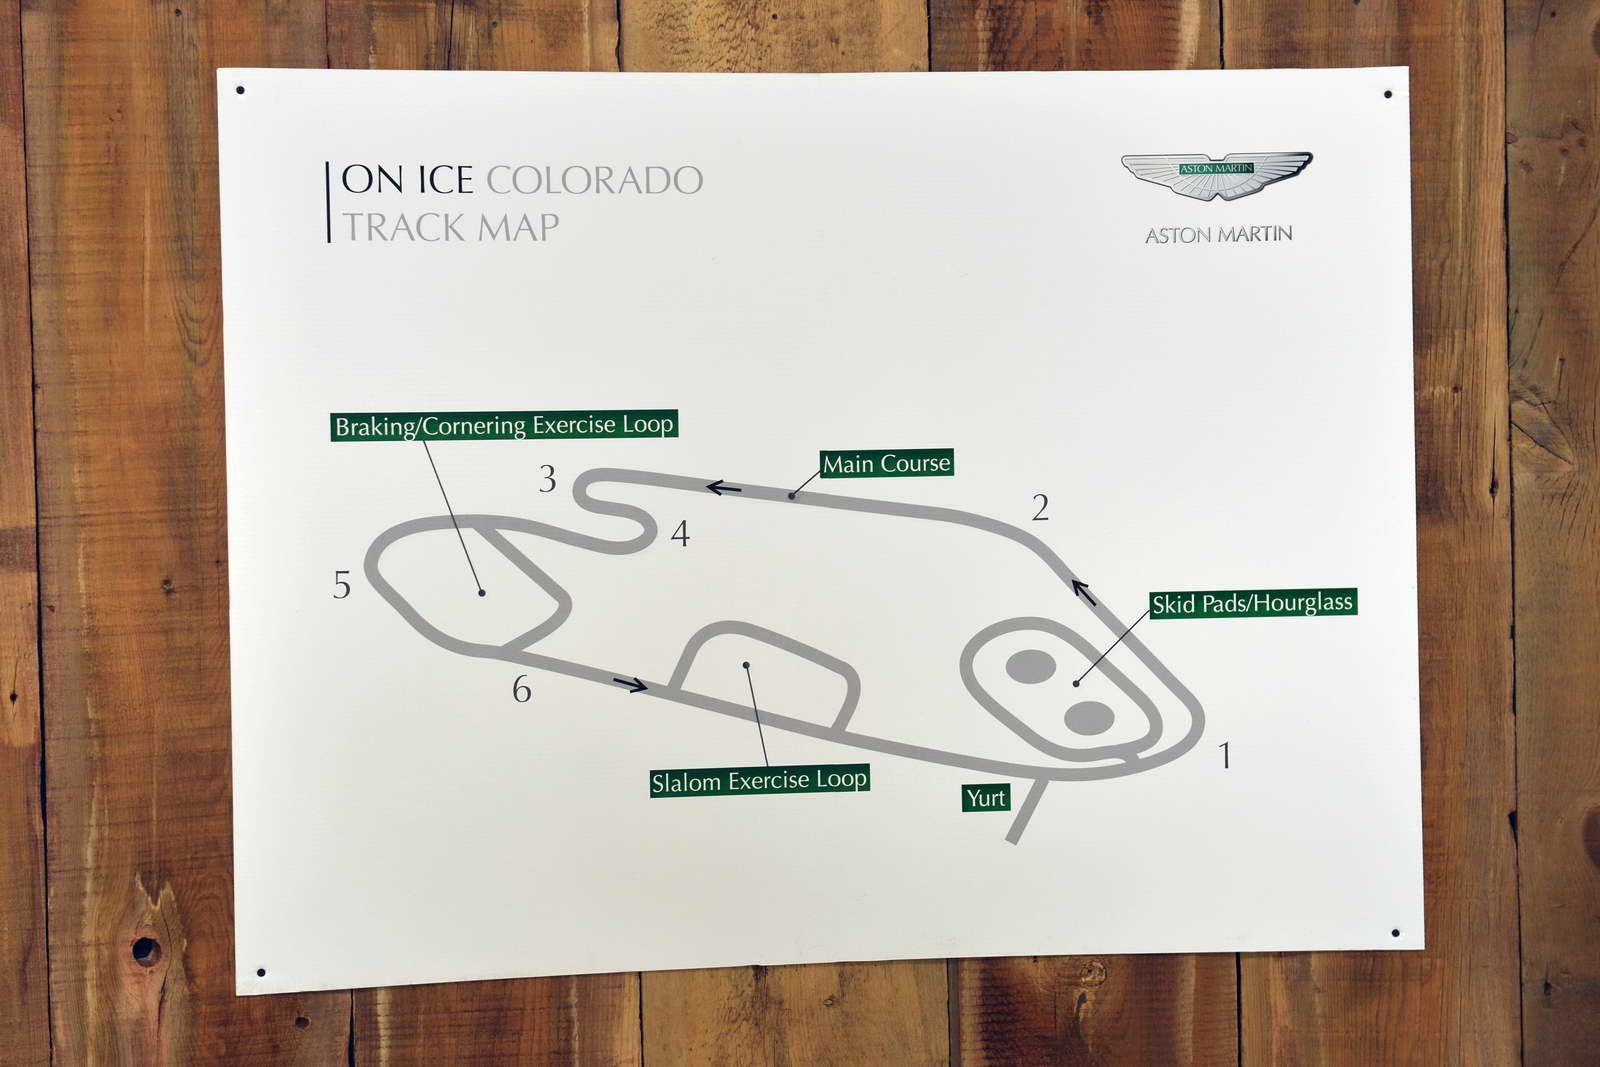 Aston Martin On Ice US 2014 (10)